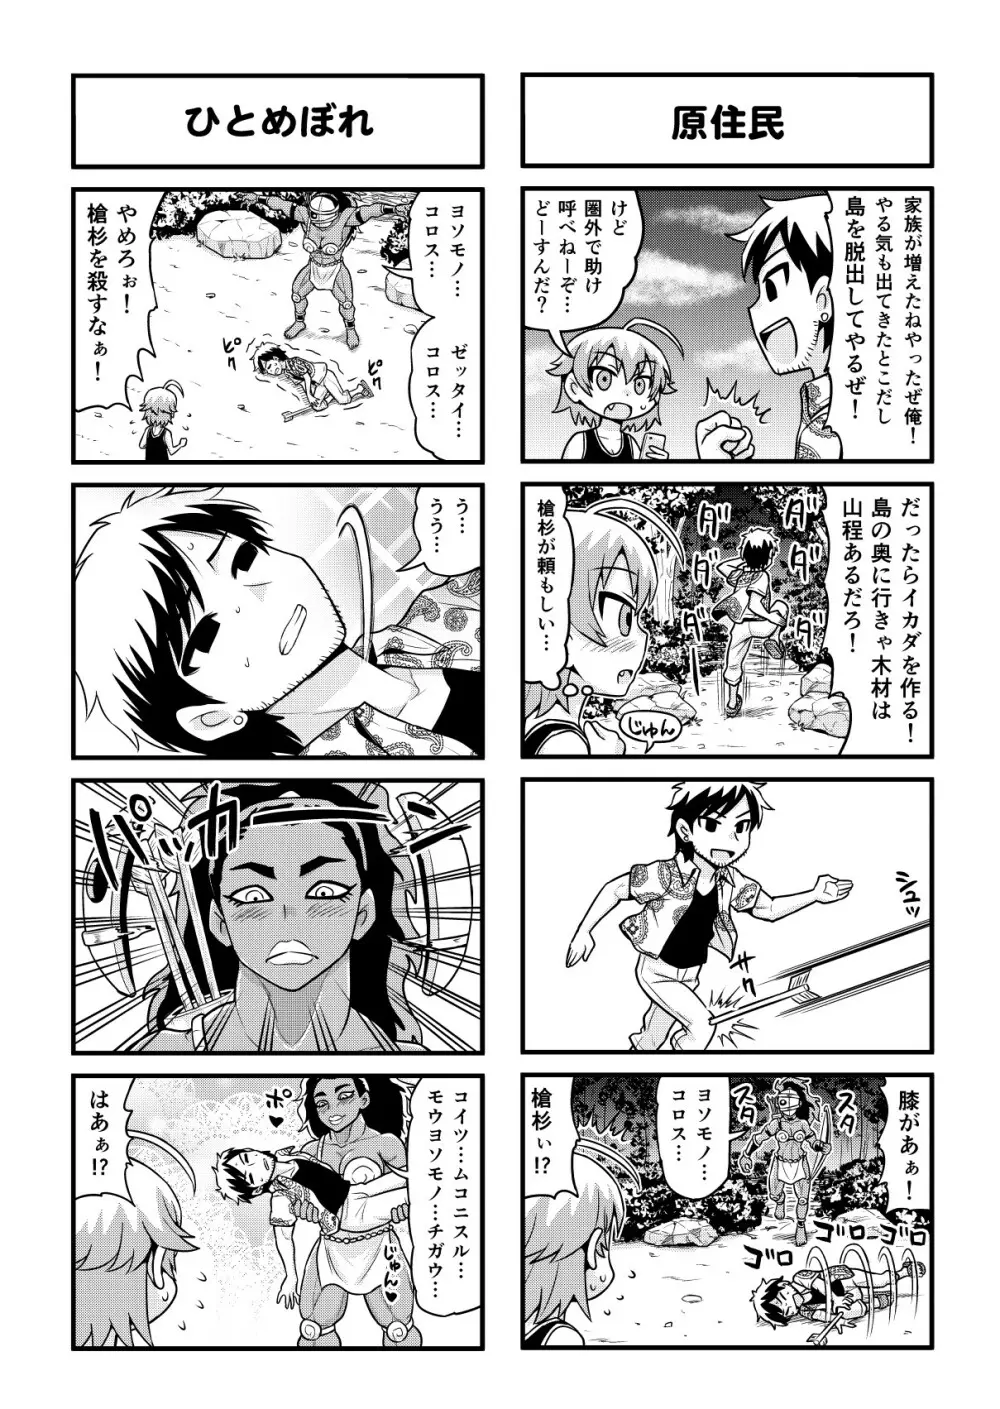 のんきBOY 1-48 - page286